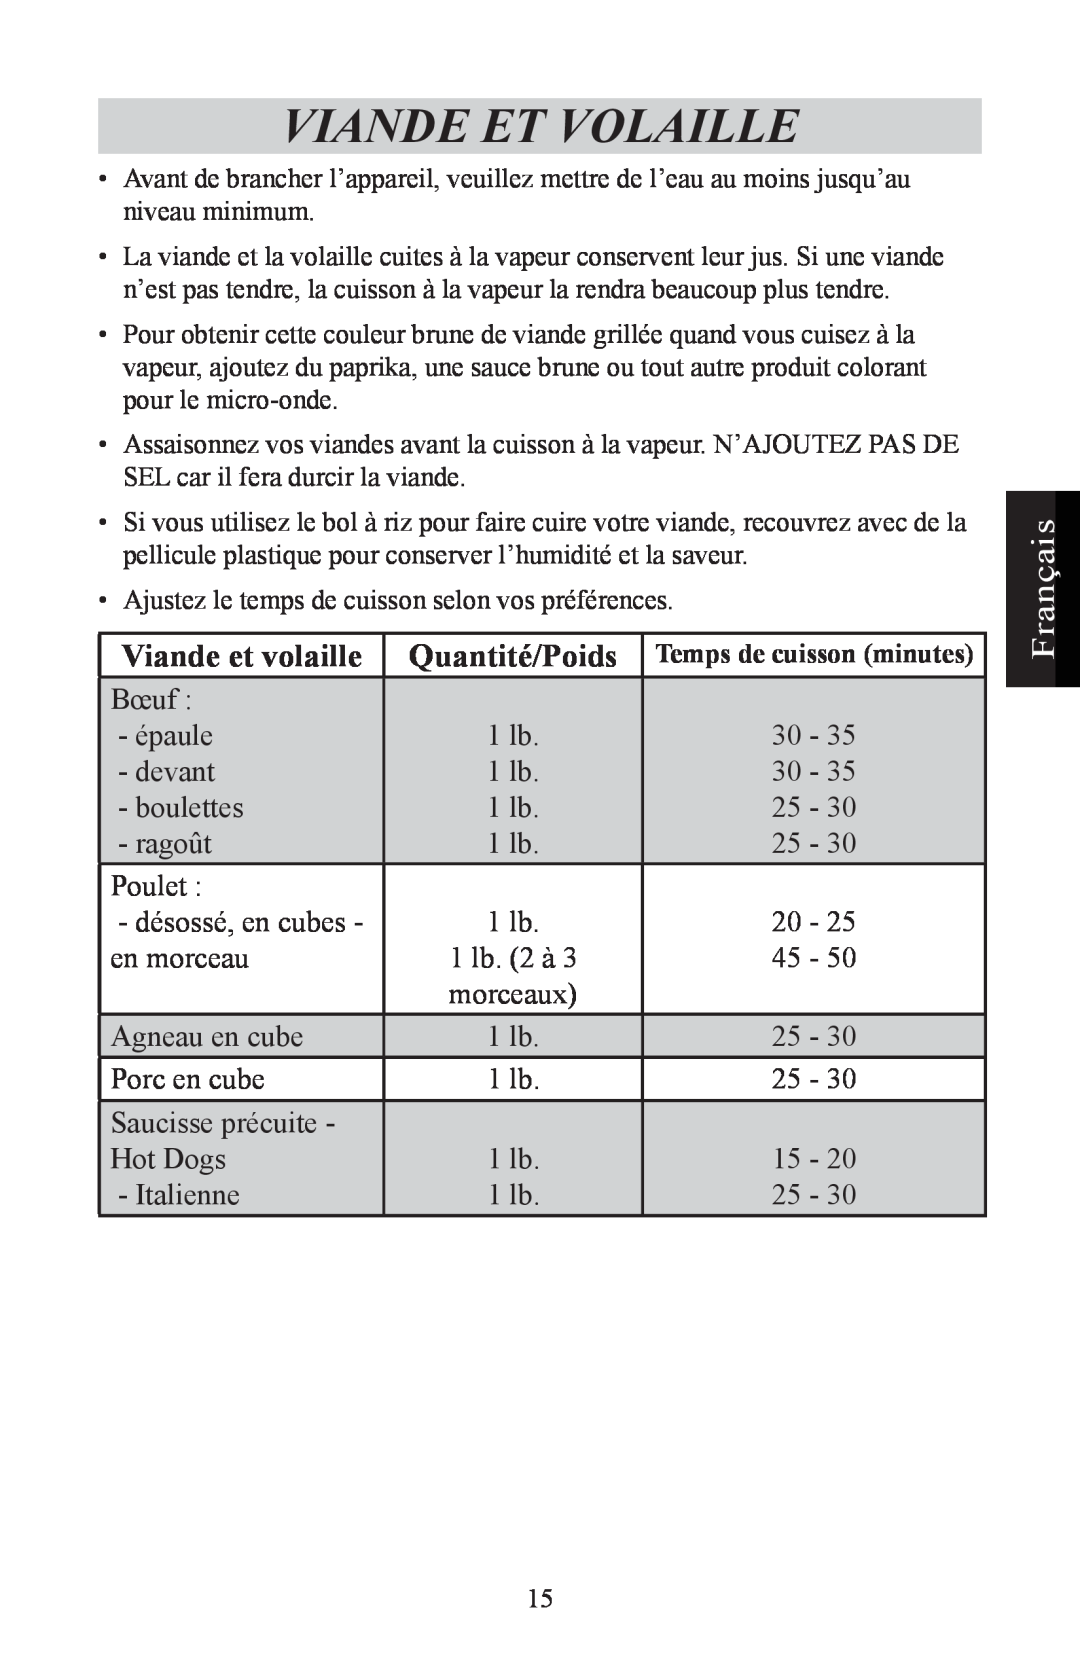 Nesco ST-24 manual Viande Et Volaille, Viande et volaille, Français, Quantité/Poids 